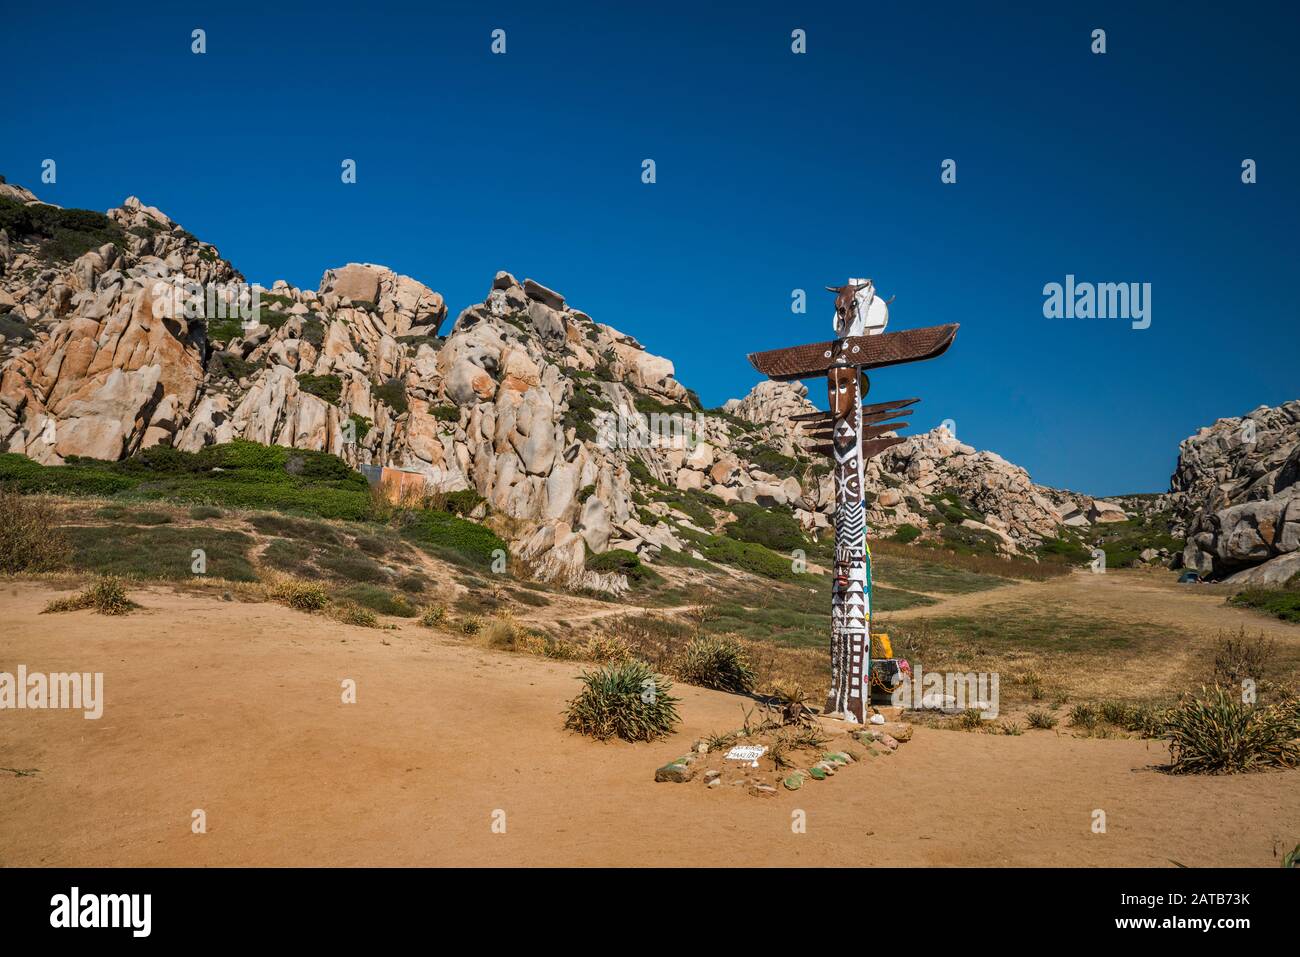 Totem pole, granite formations at Valle della Luna, Capo Testa, near Santa Teresa di Gallura, Gallura region, Sassari province, Sardinia, Italy Stock Photo